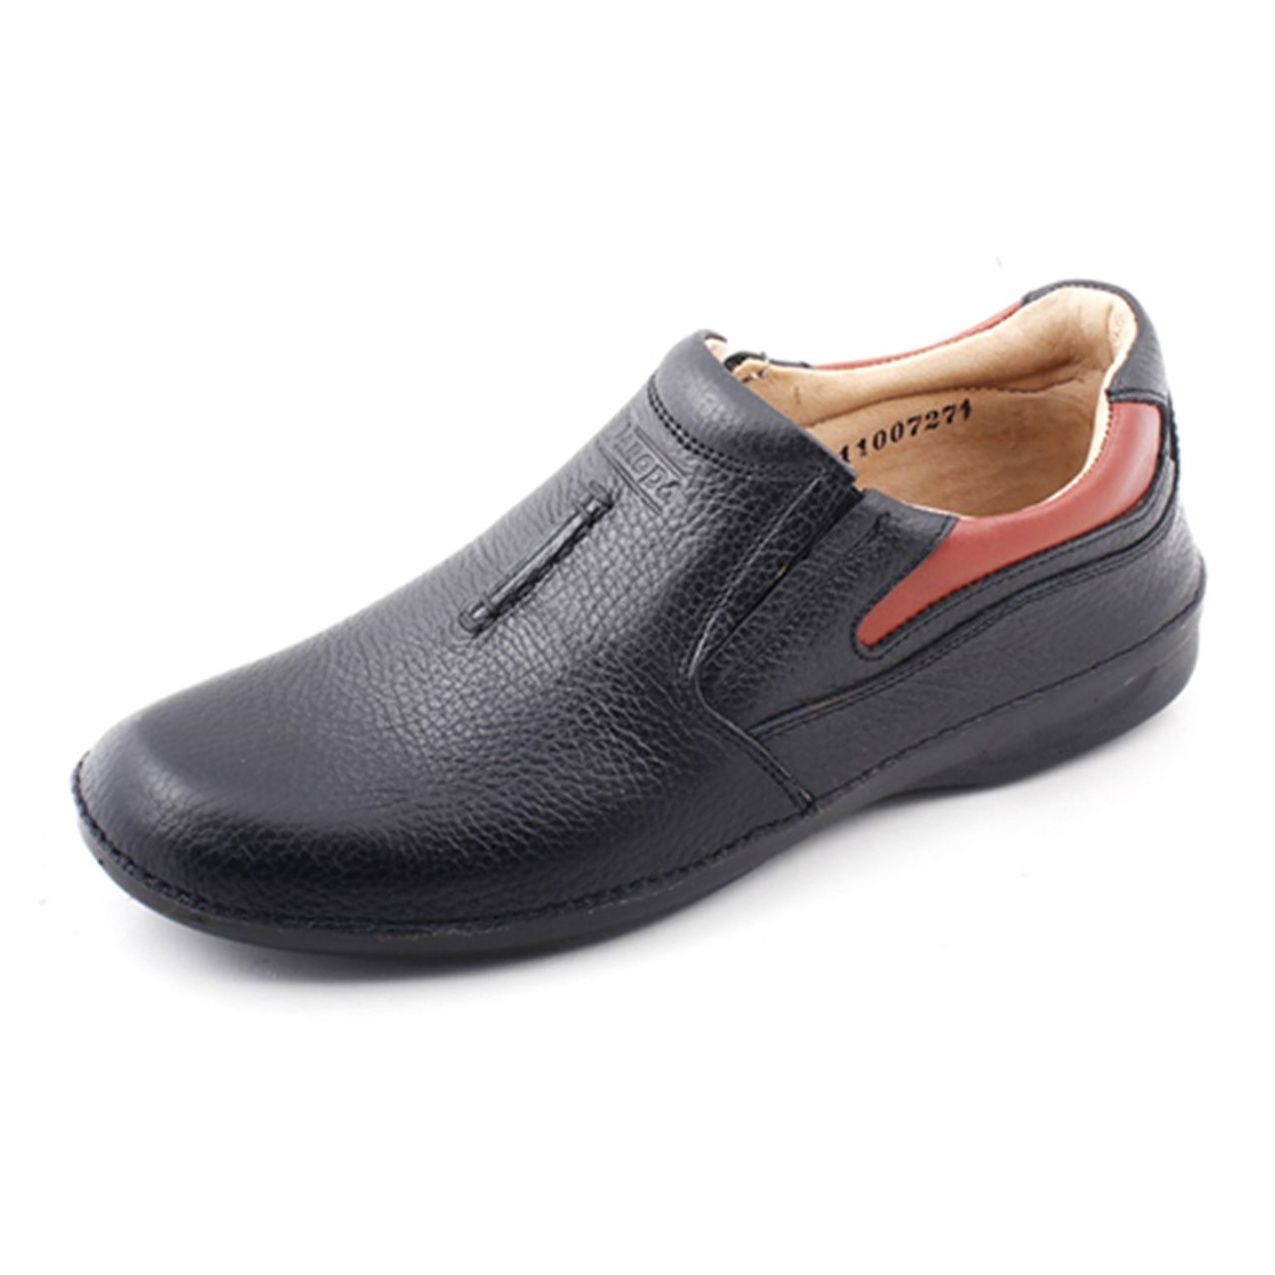 کفش مردانه پاروپا مدل اسکات کد50712501653